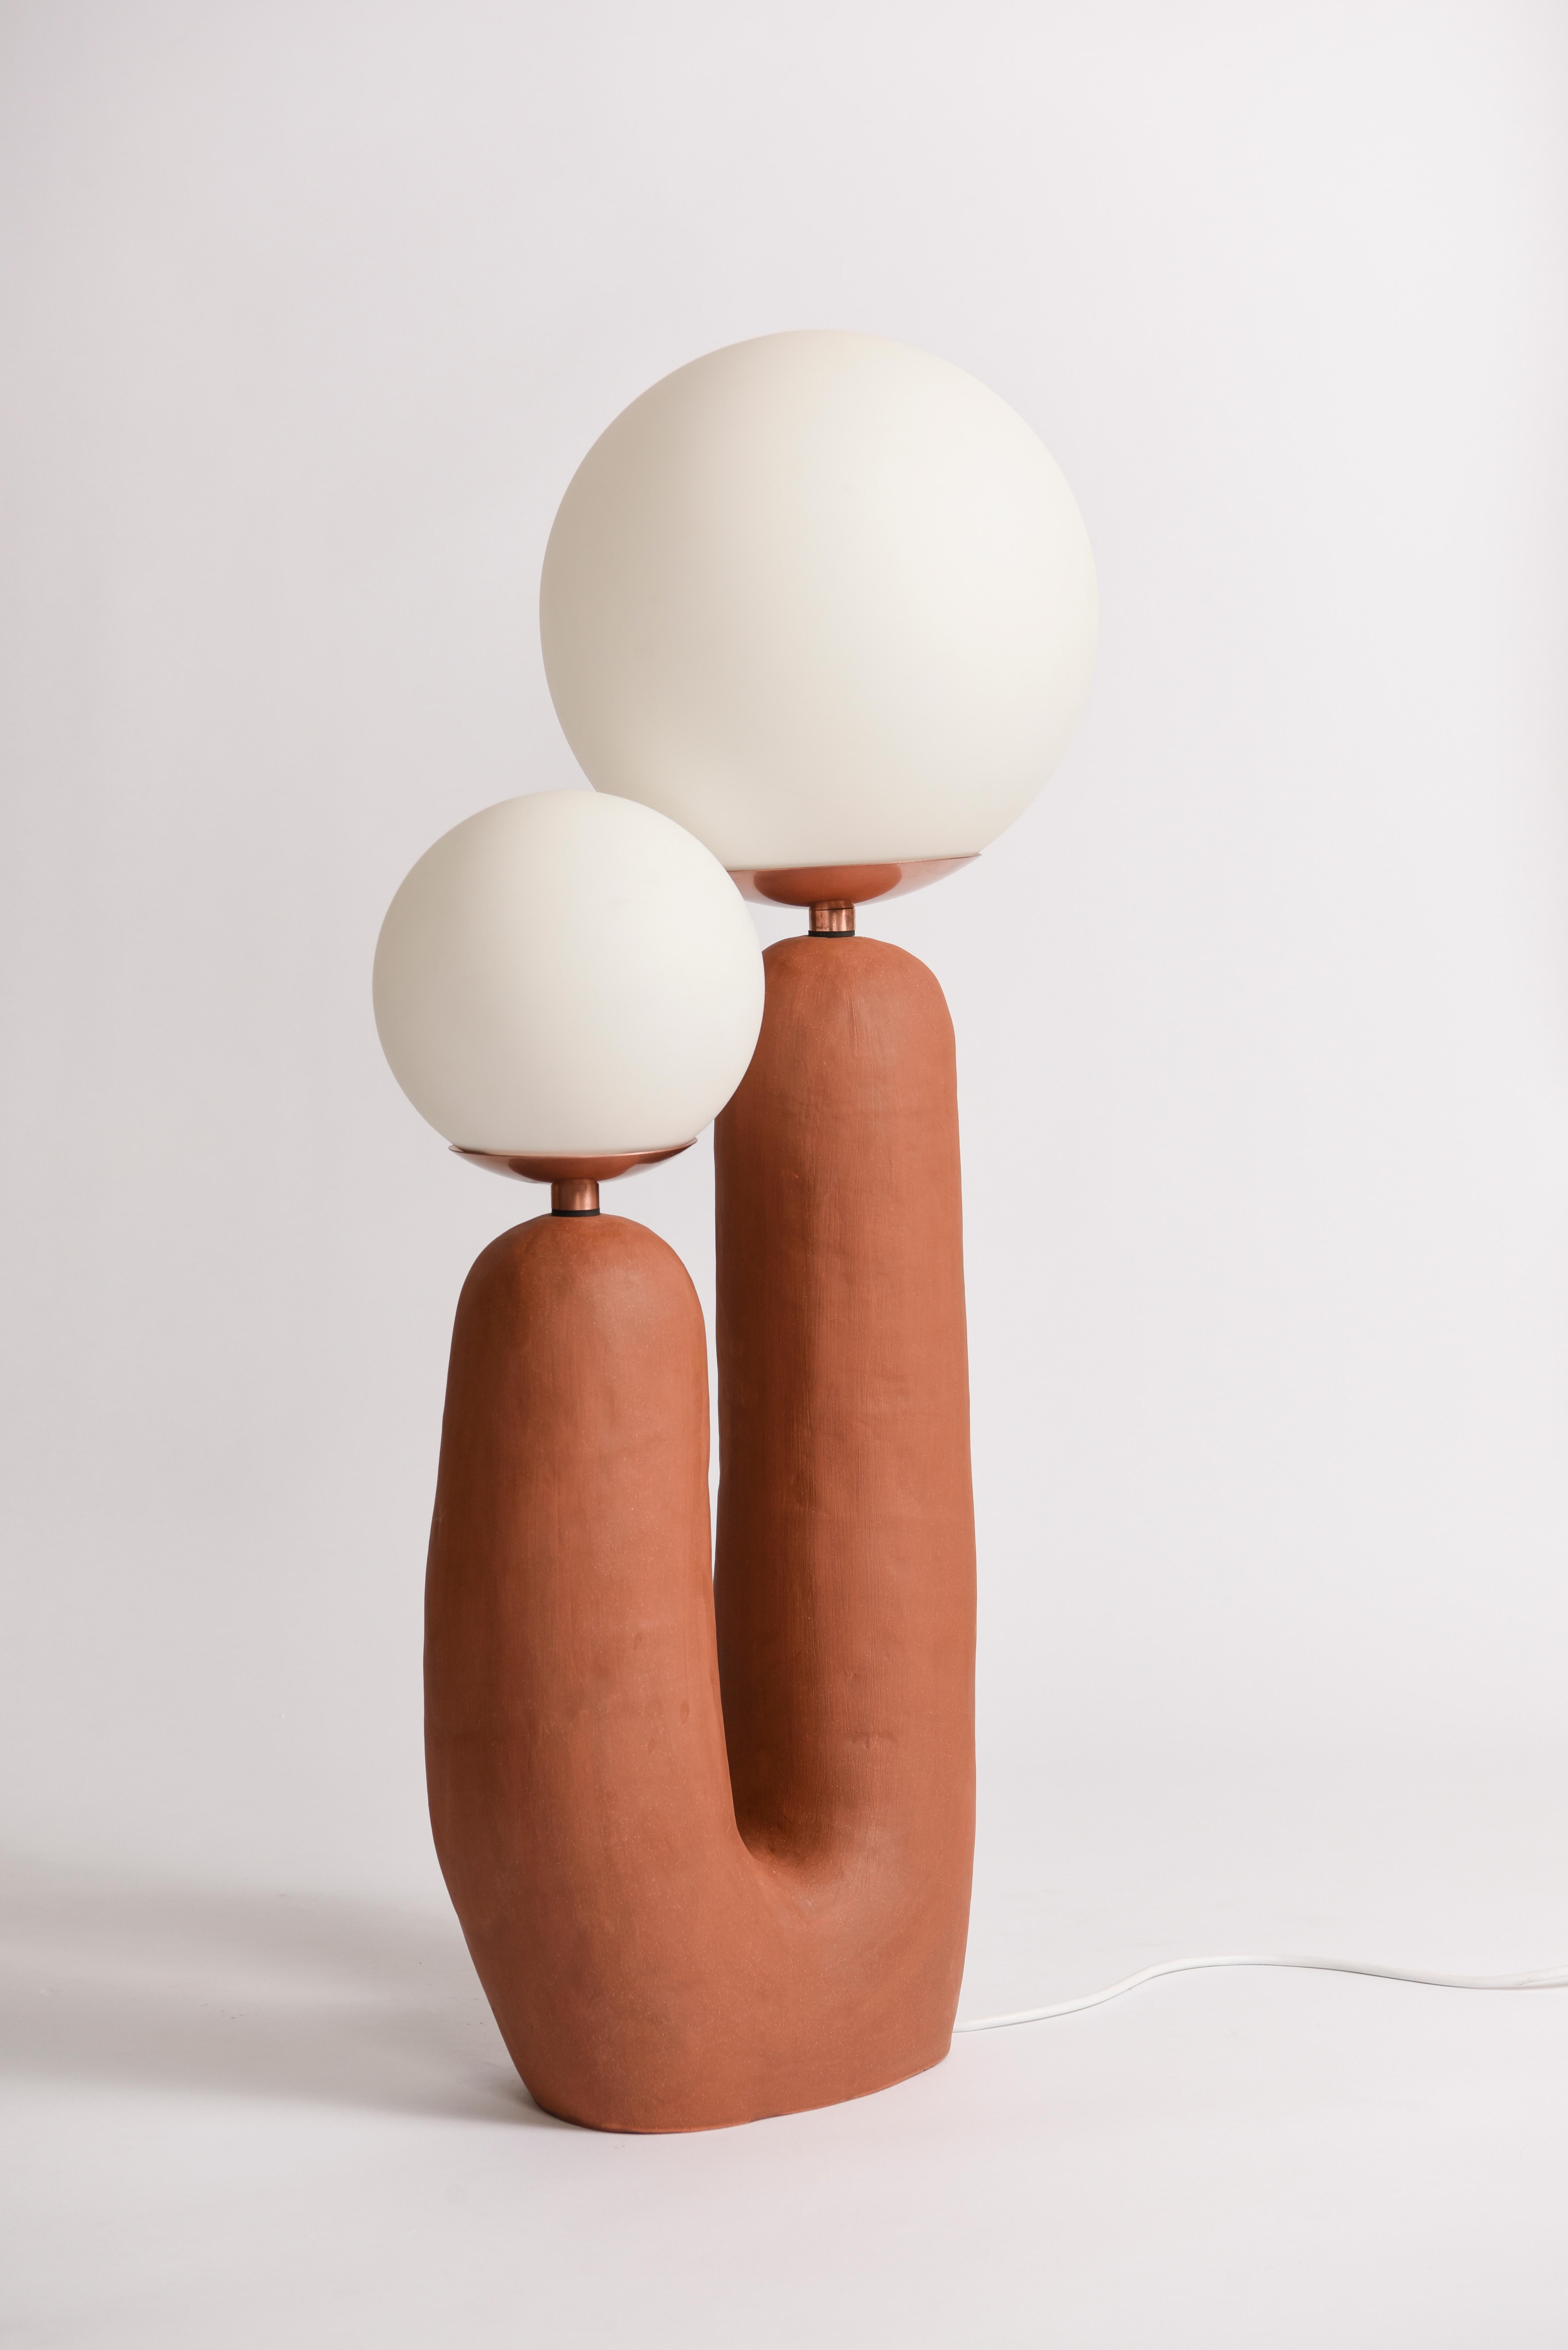 Als Teil der First Hand Collection debütierten die Oo Lamps auf der International Contemporary Furniture Fair 2018, wo Eny Lee Parker als bester aufstrebender Designer ausgezeichnet wurde.
Dieser Keramiksockel ist handgefertigt und mit Kupferdetails